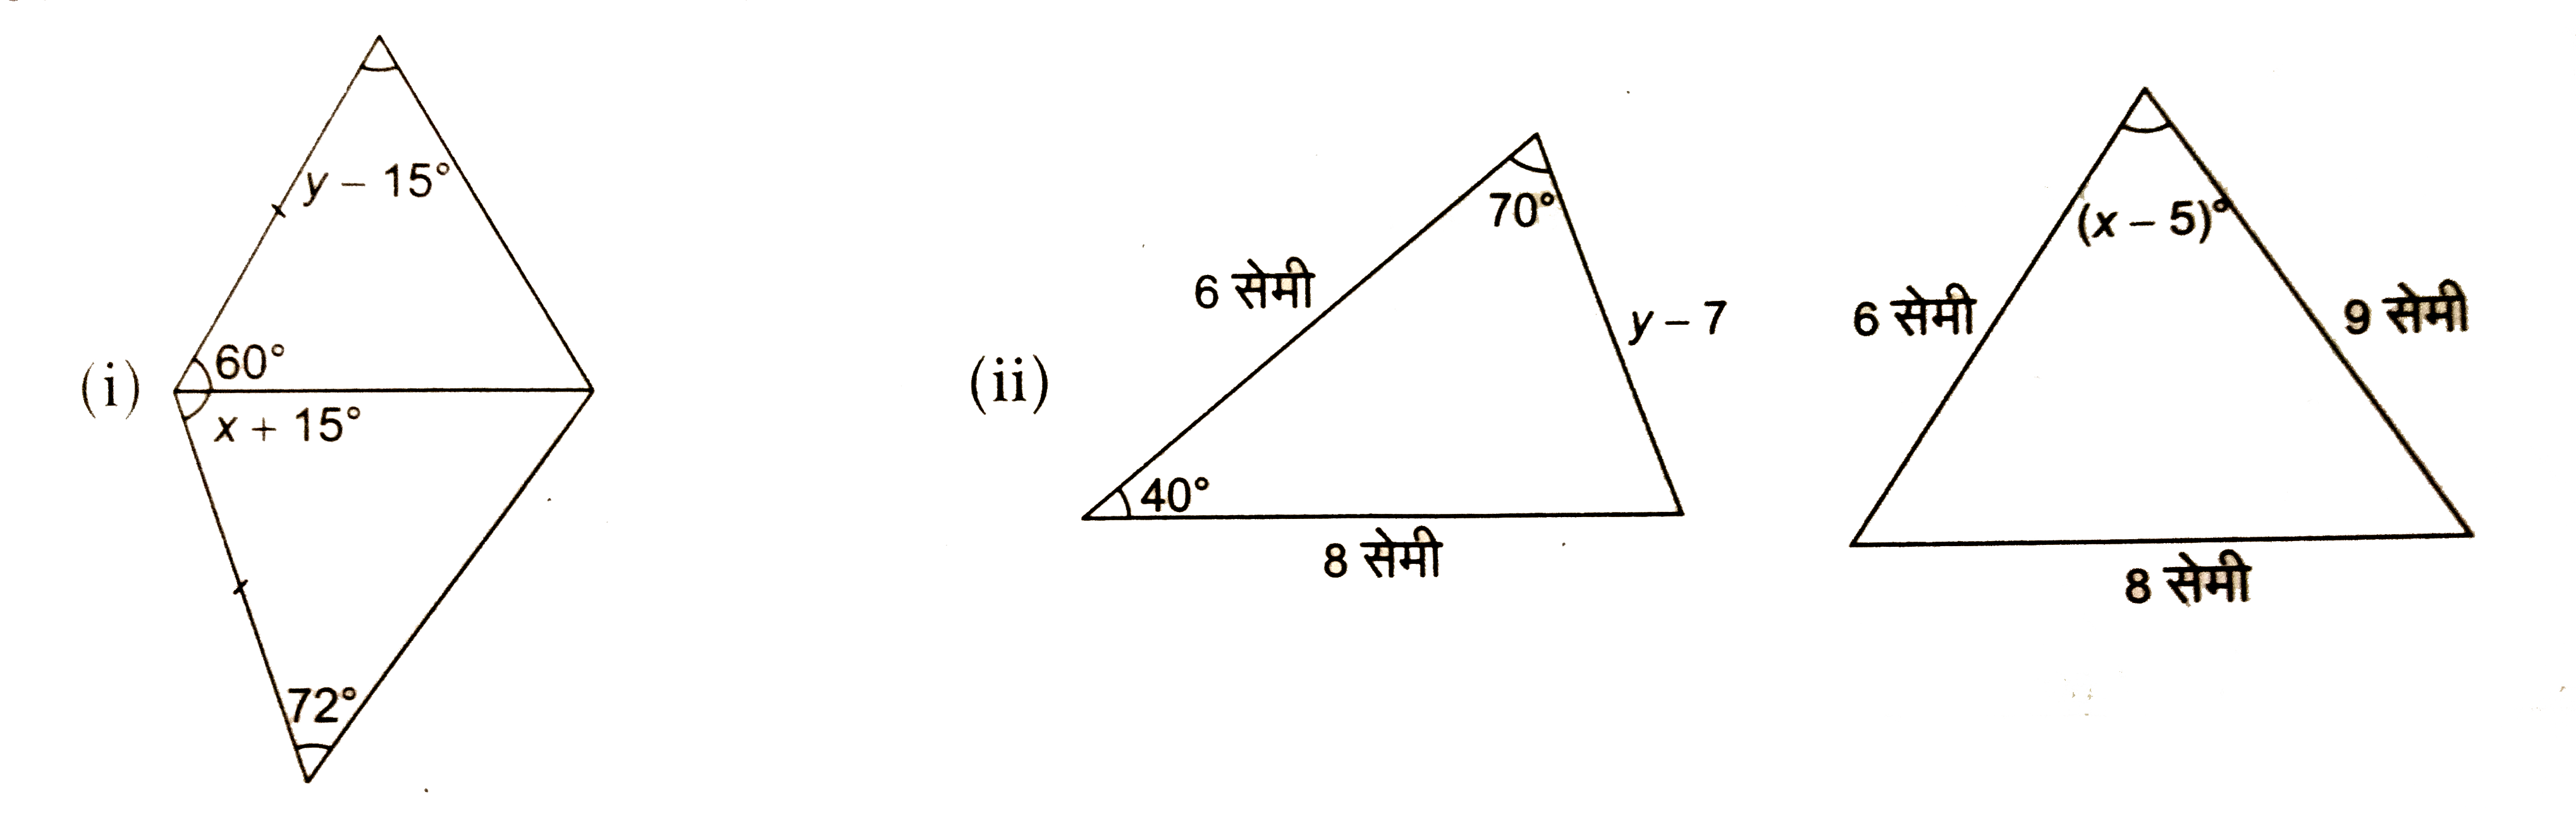 निम्नलिखित प्रत्येक चित्र में दो सर्वांगसम त्रिभुज दिखाए गये है। प्रत्येक से x और y के मान ज्ञात कीजिए :